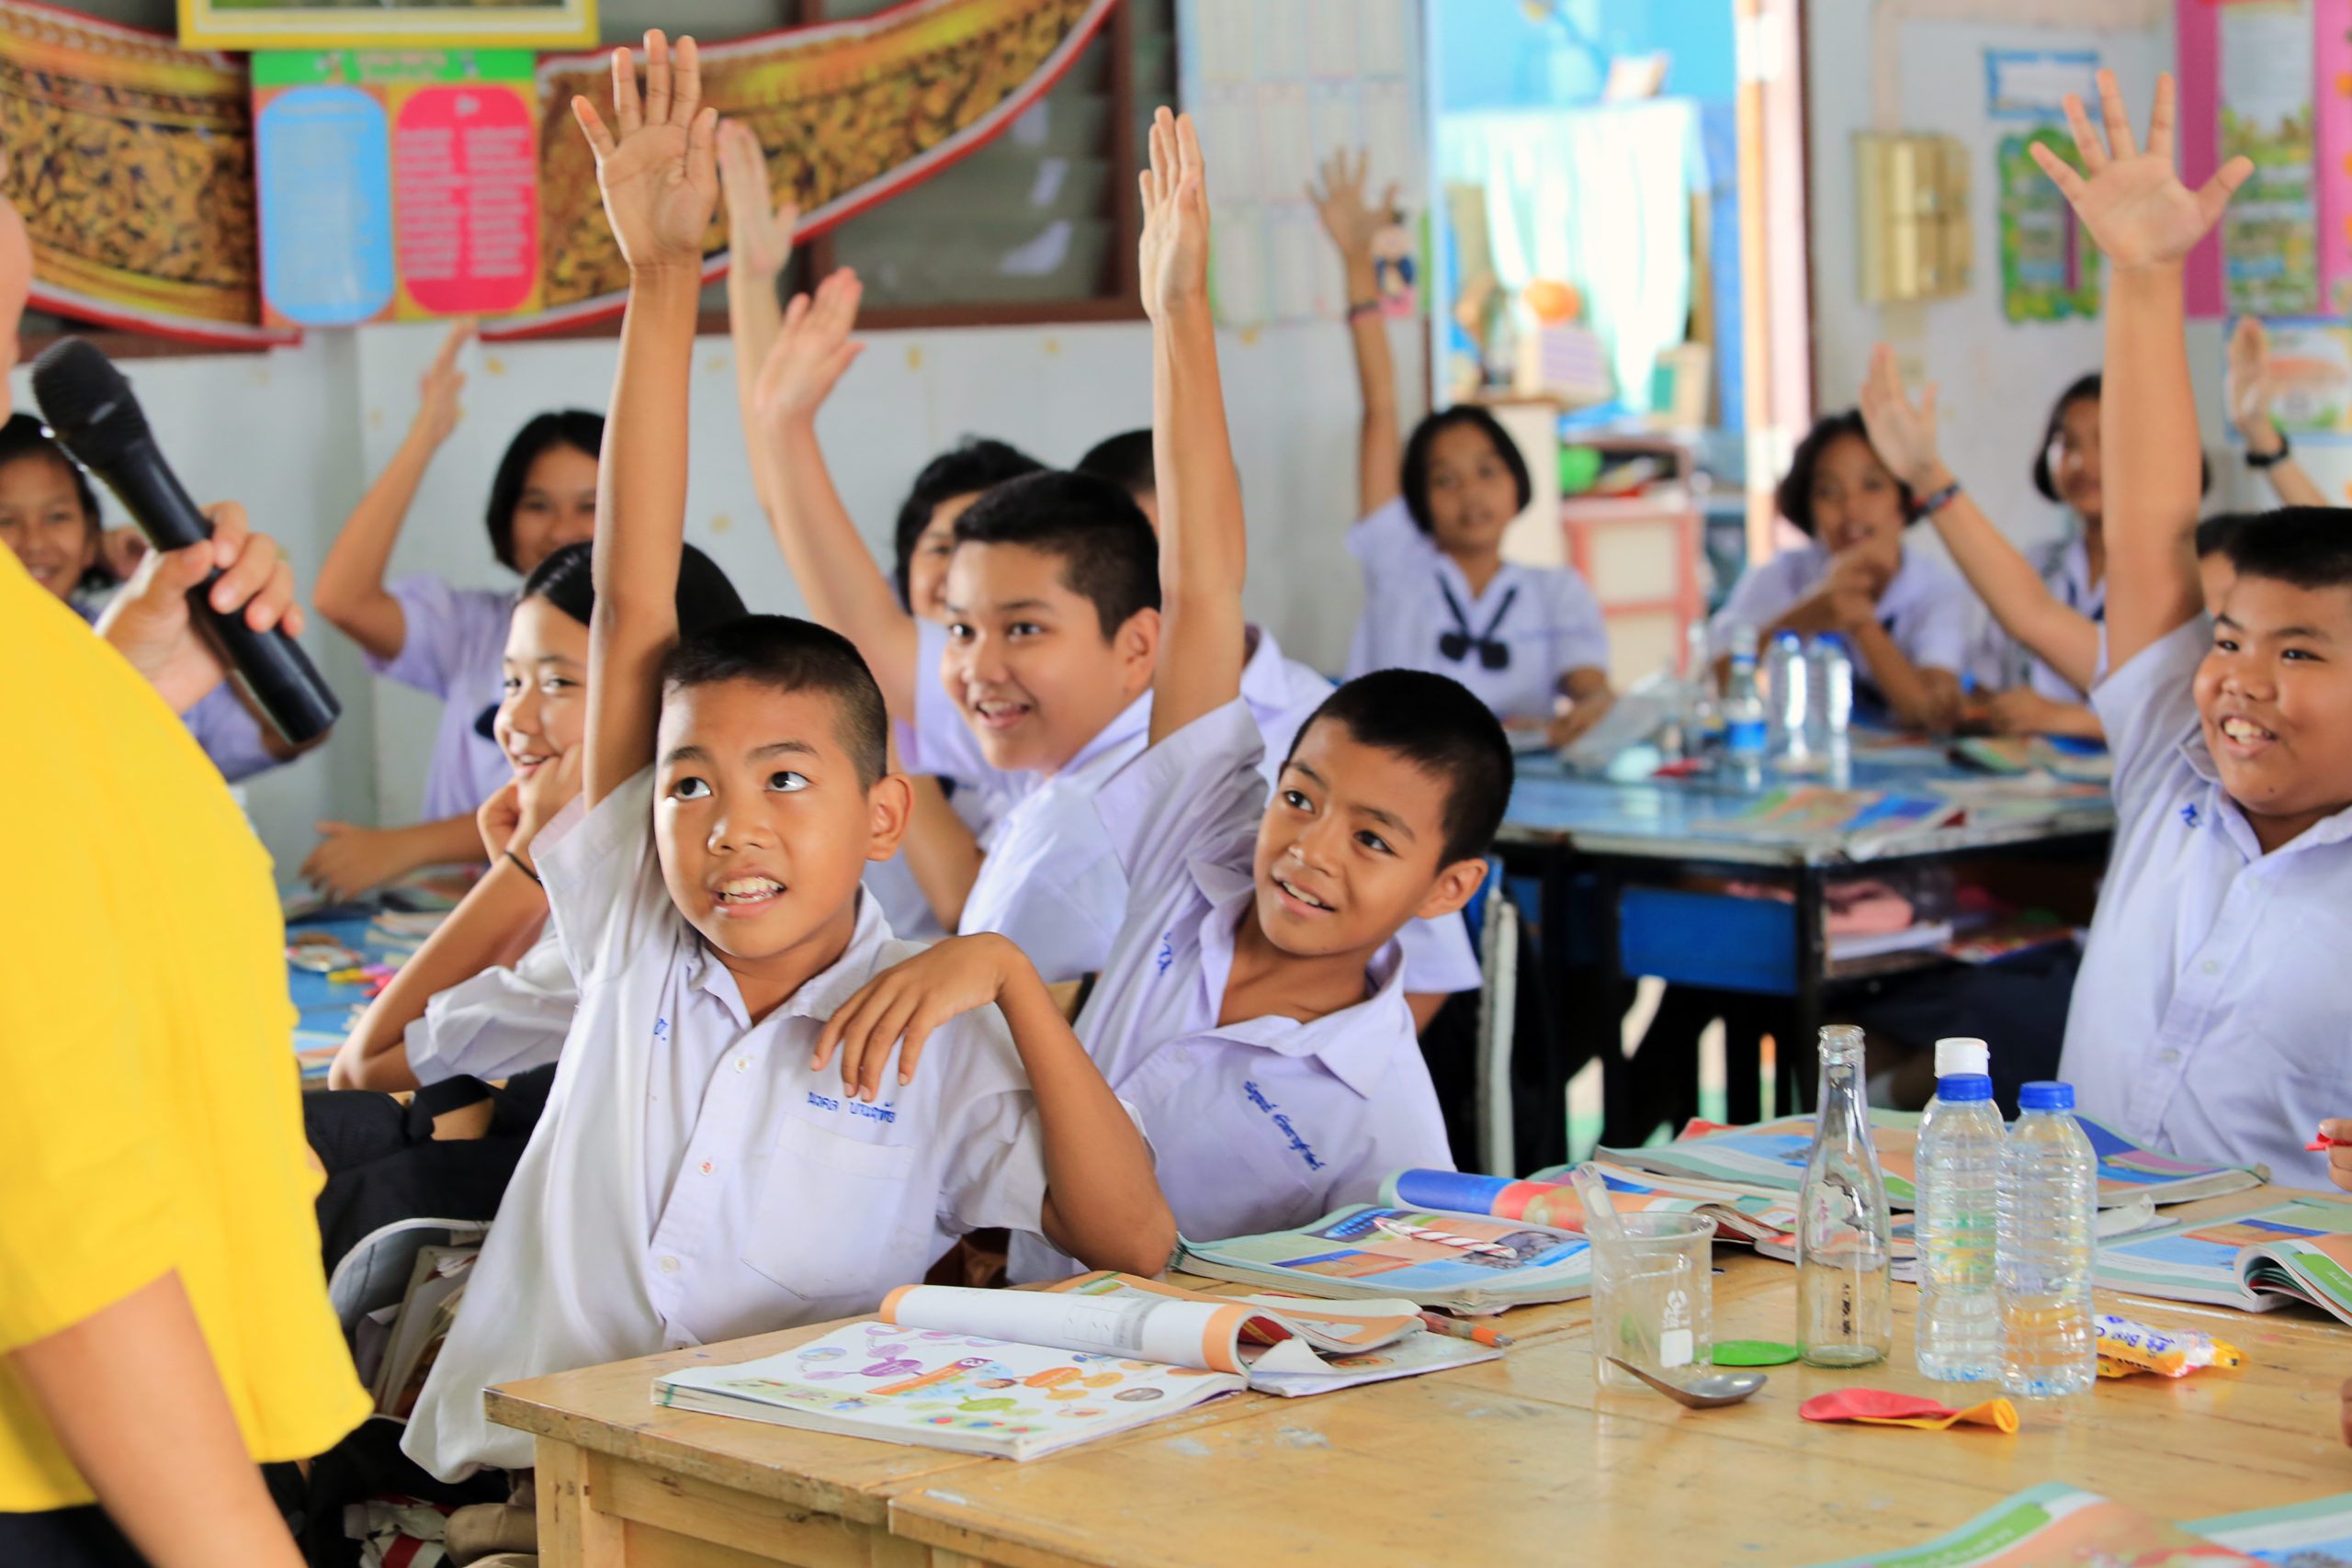 ระบบ การศึกษาไทย 4.0 มีกฎระเบียบที่มากจนเกินไป